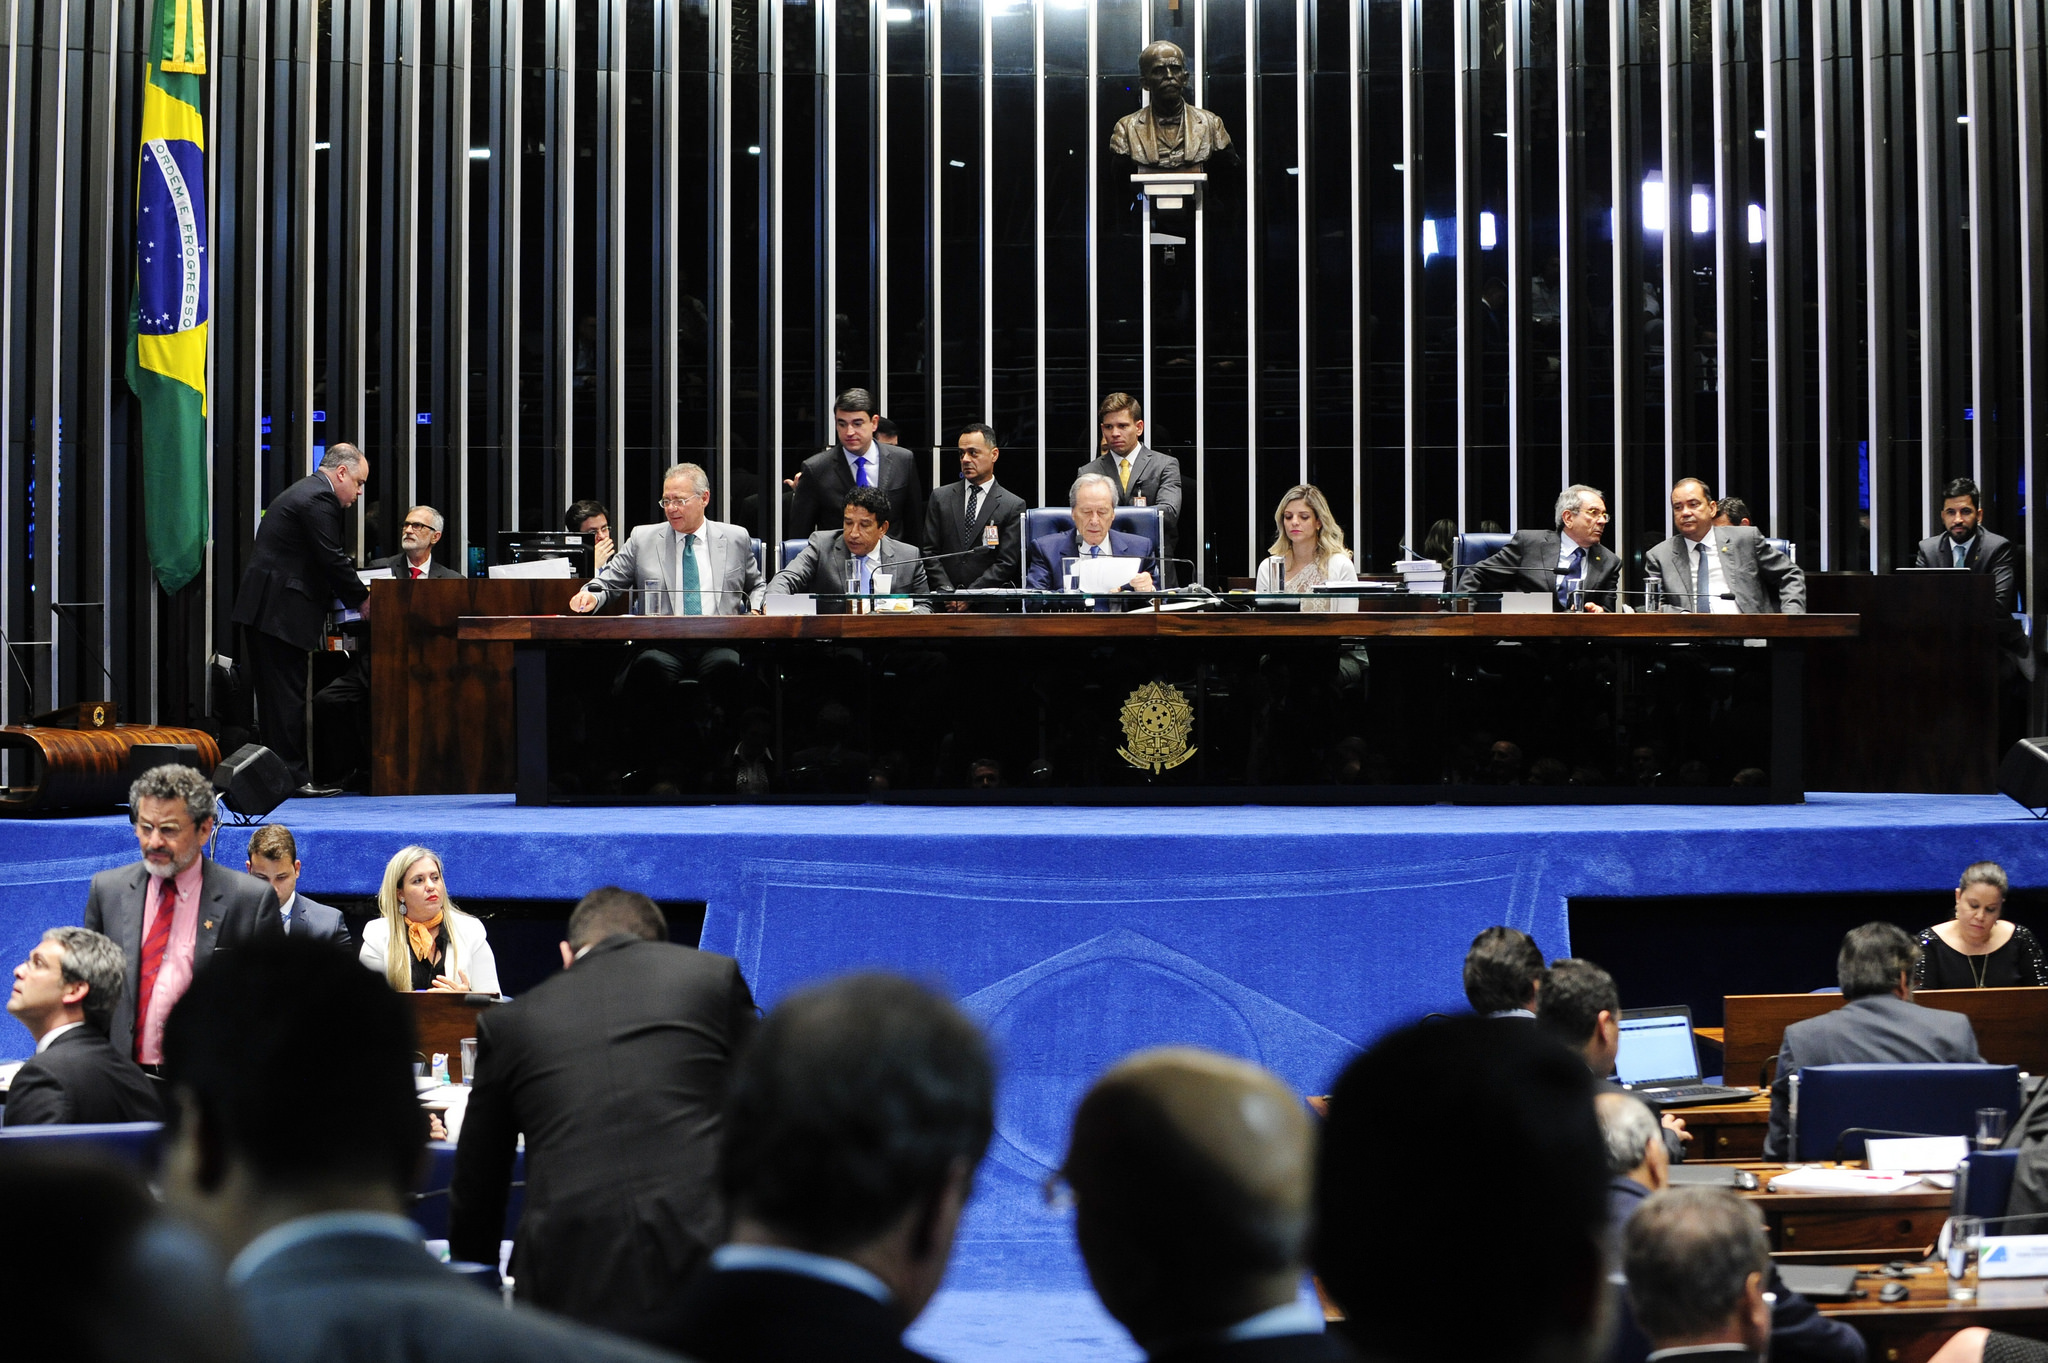 Sessão foi presidida pelo presidente do STF, Ricardo Lewandowski | Foto: Jonas Pereira / Agência Senado / OA